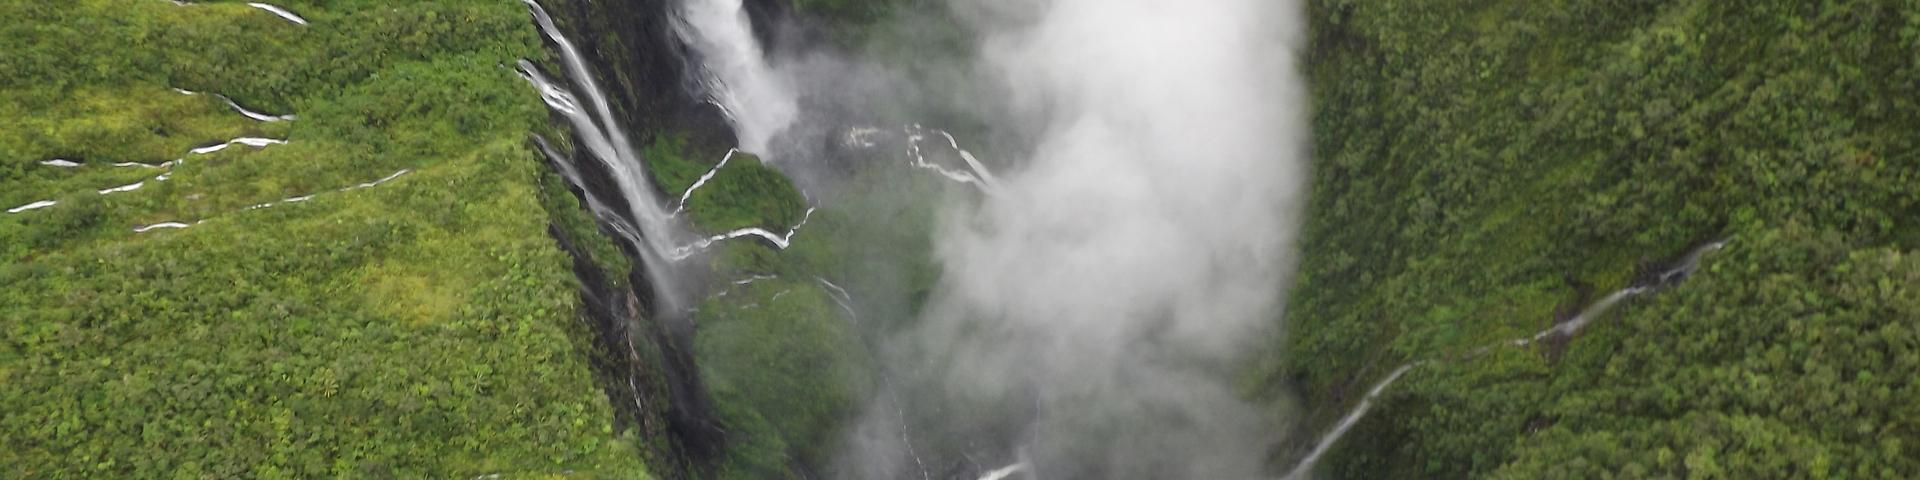 Survol héliporté du Trou de Fer, La Réunion